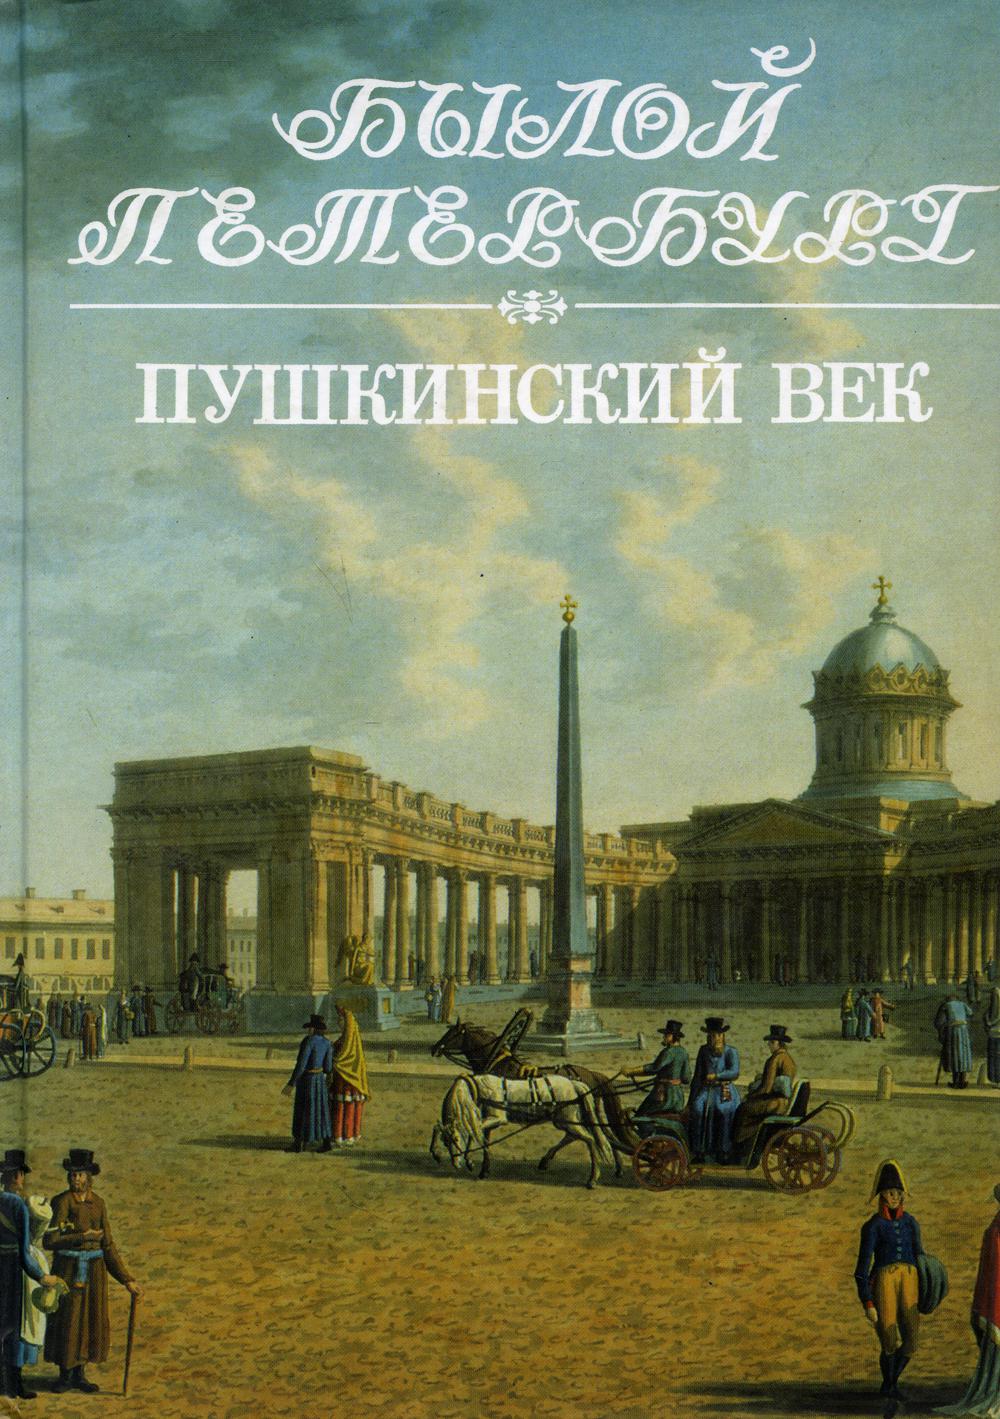 Пушкинский век: Панорама столичной жизни. Кн. 2